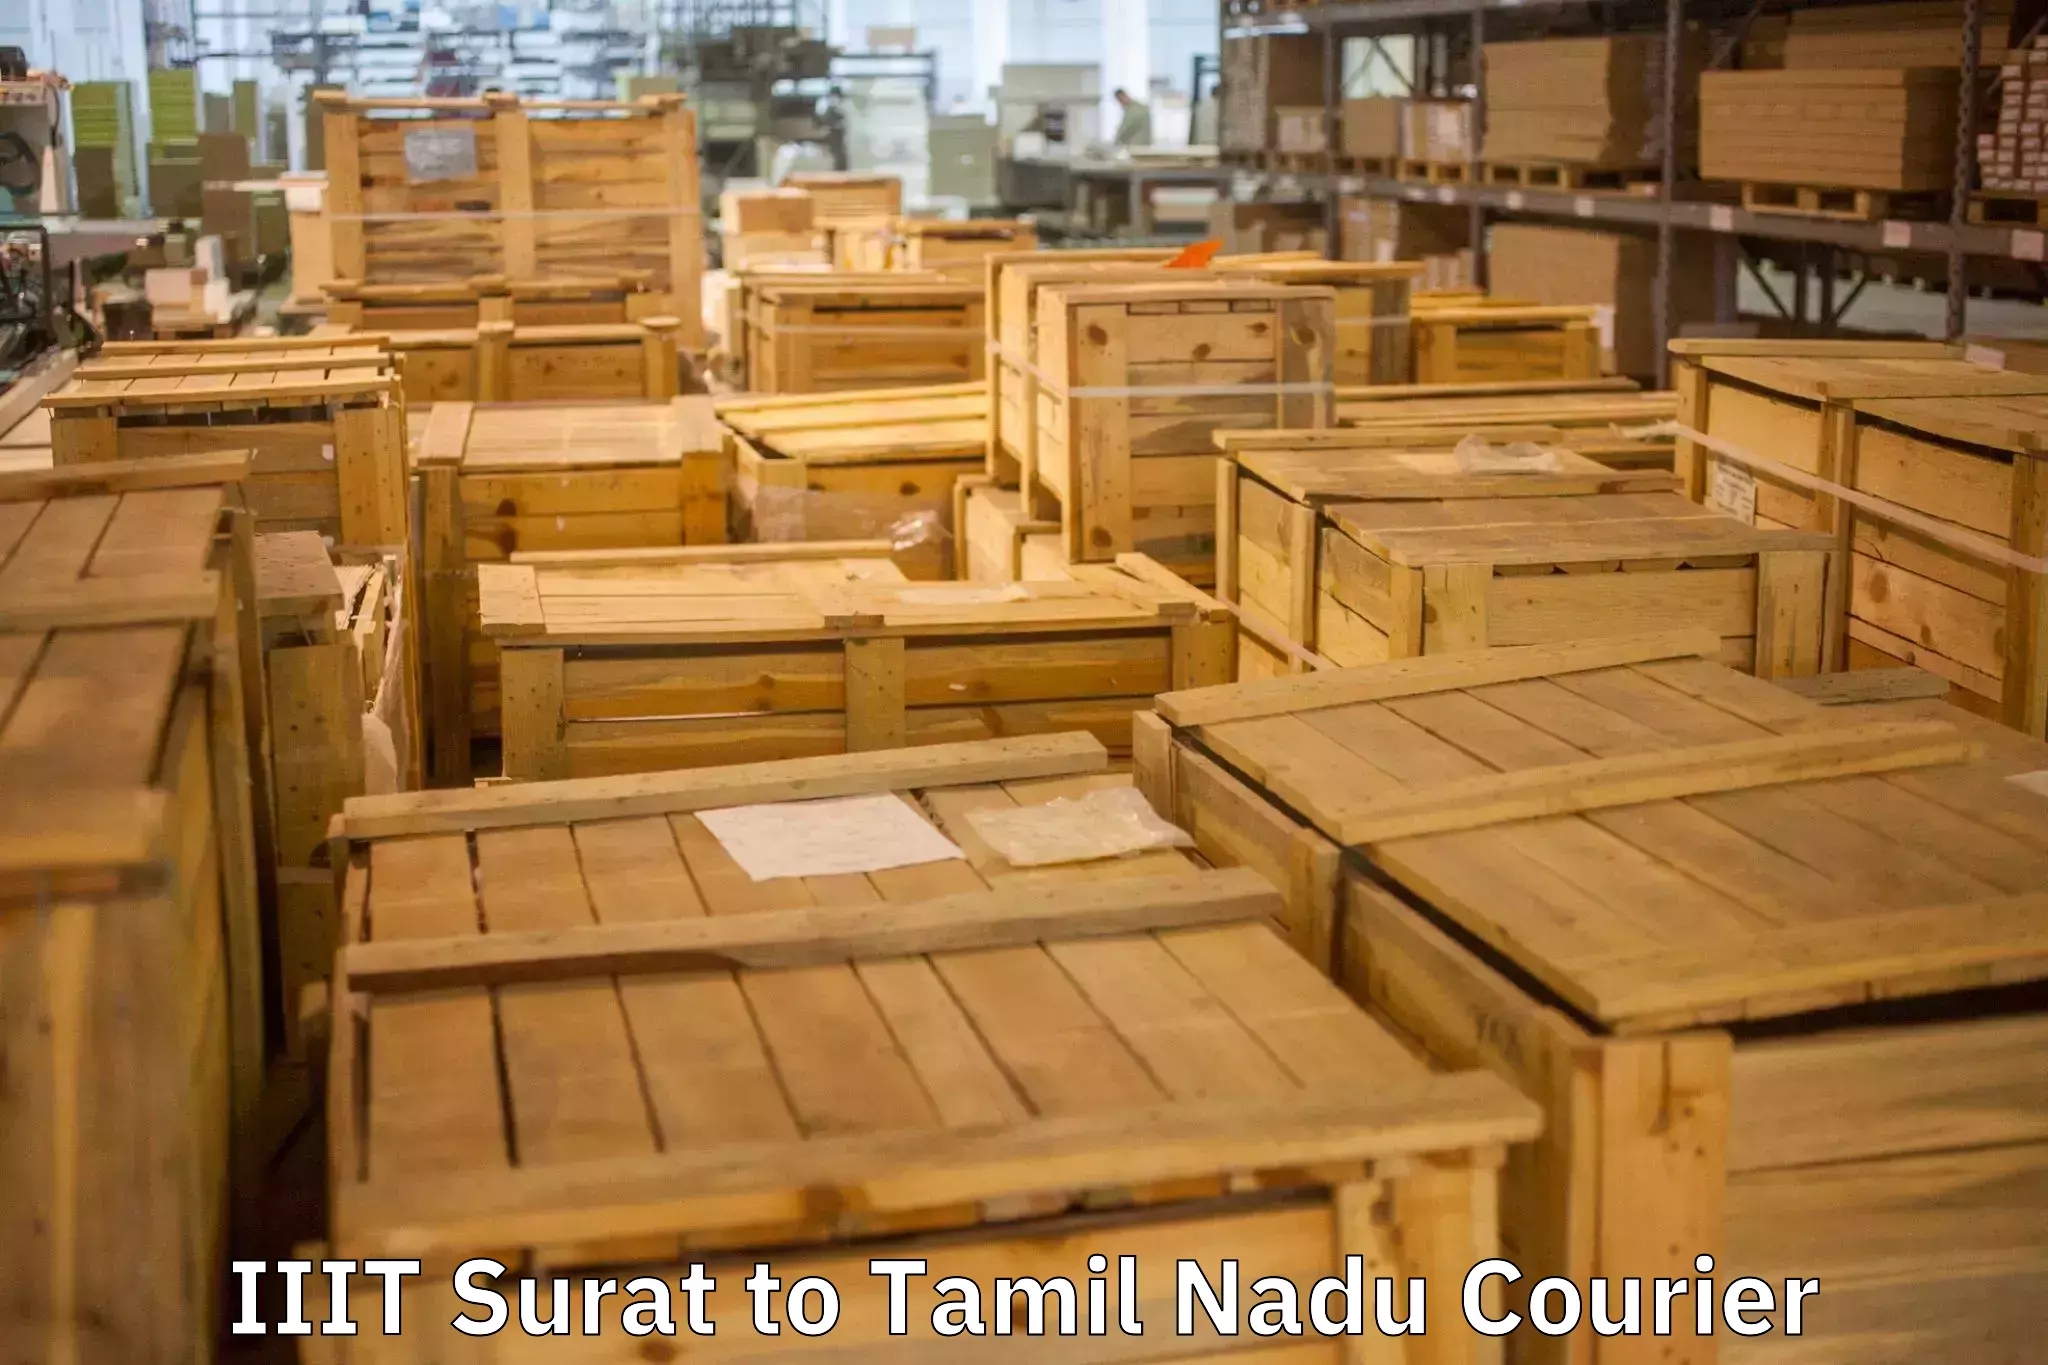 Home goods transport in IIIT Surat to Tamil Nadu